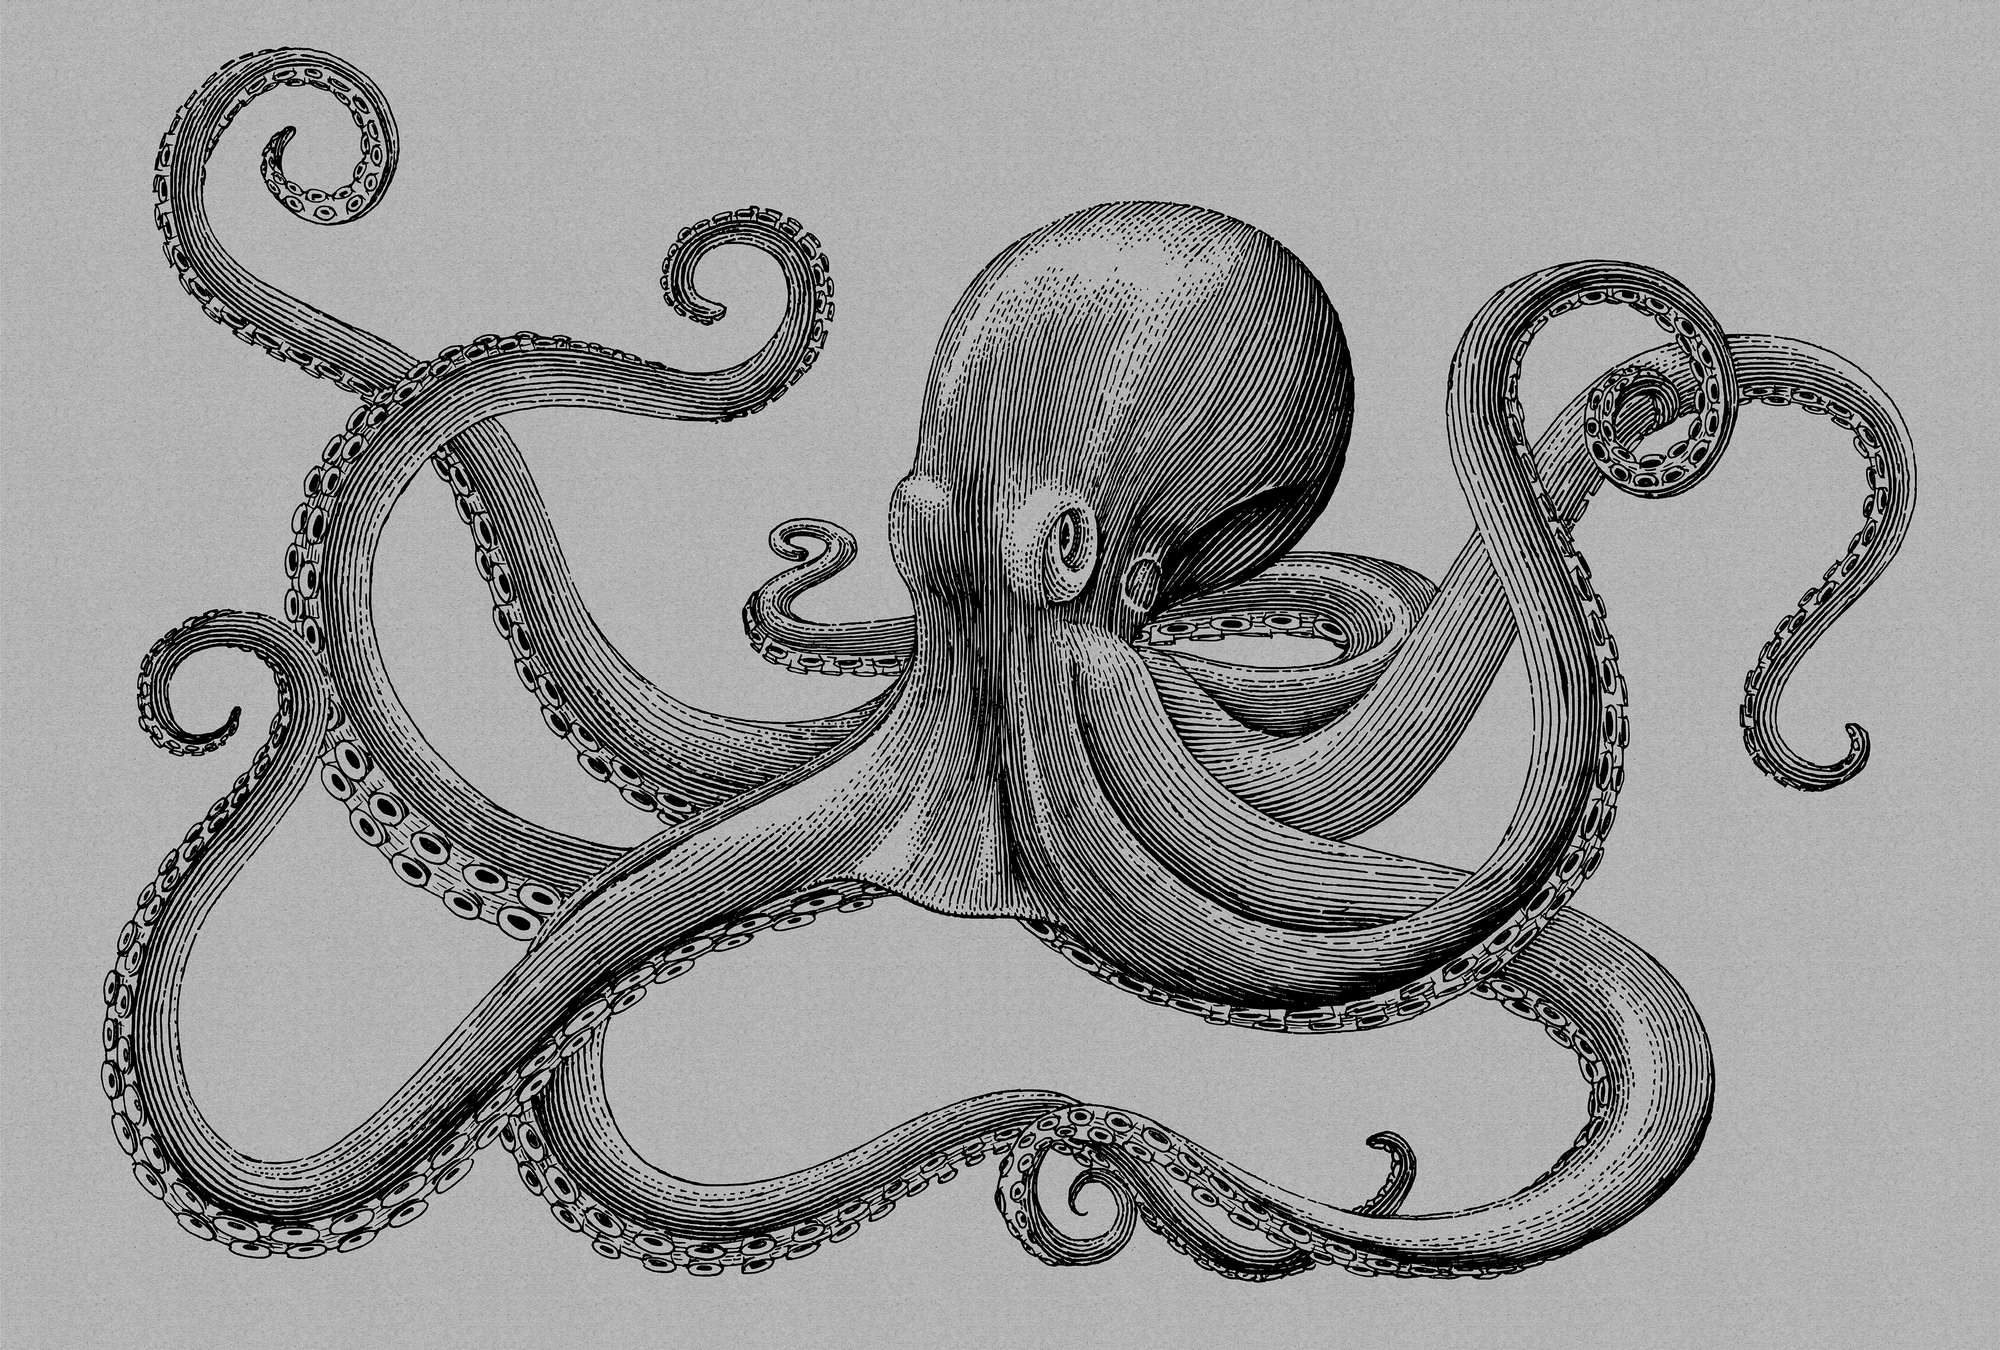             Jules 2 - Modern octopusbehang in kartonstructuur in tekenstijl - grijs, zwart | parelmoer glad vlies
        